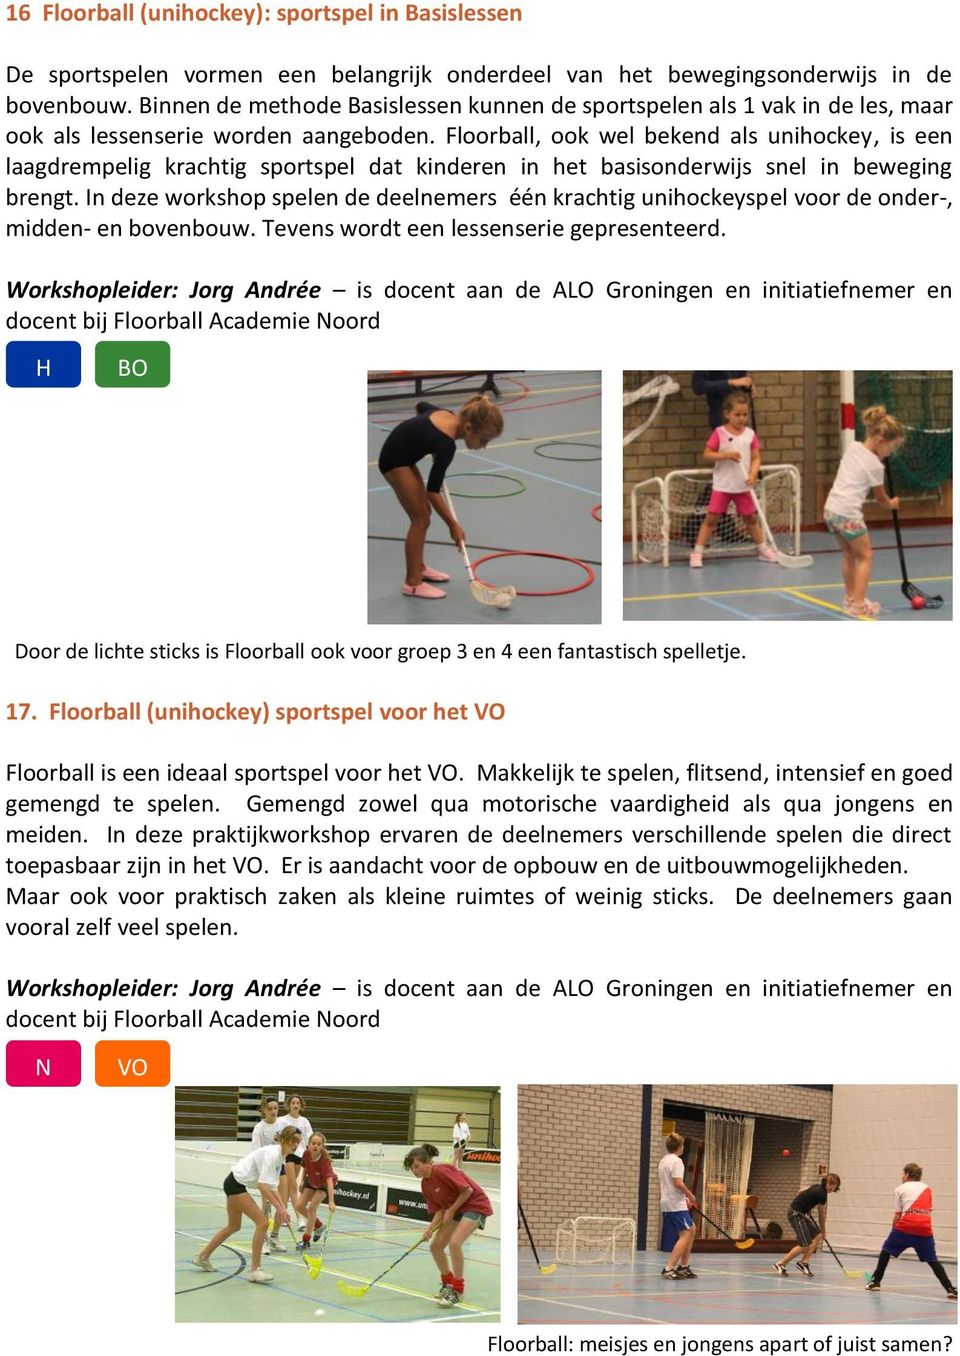 Floorball, ook wel bekend als unihockey, is een laagdrempelig krachtig sportspel dat kinderen in het basisonderwijs snel in beweging brengt.